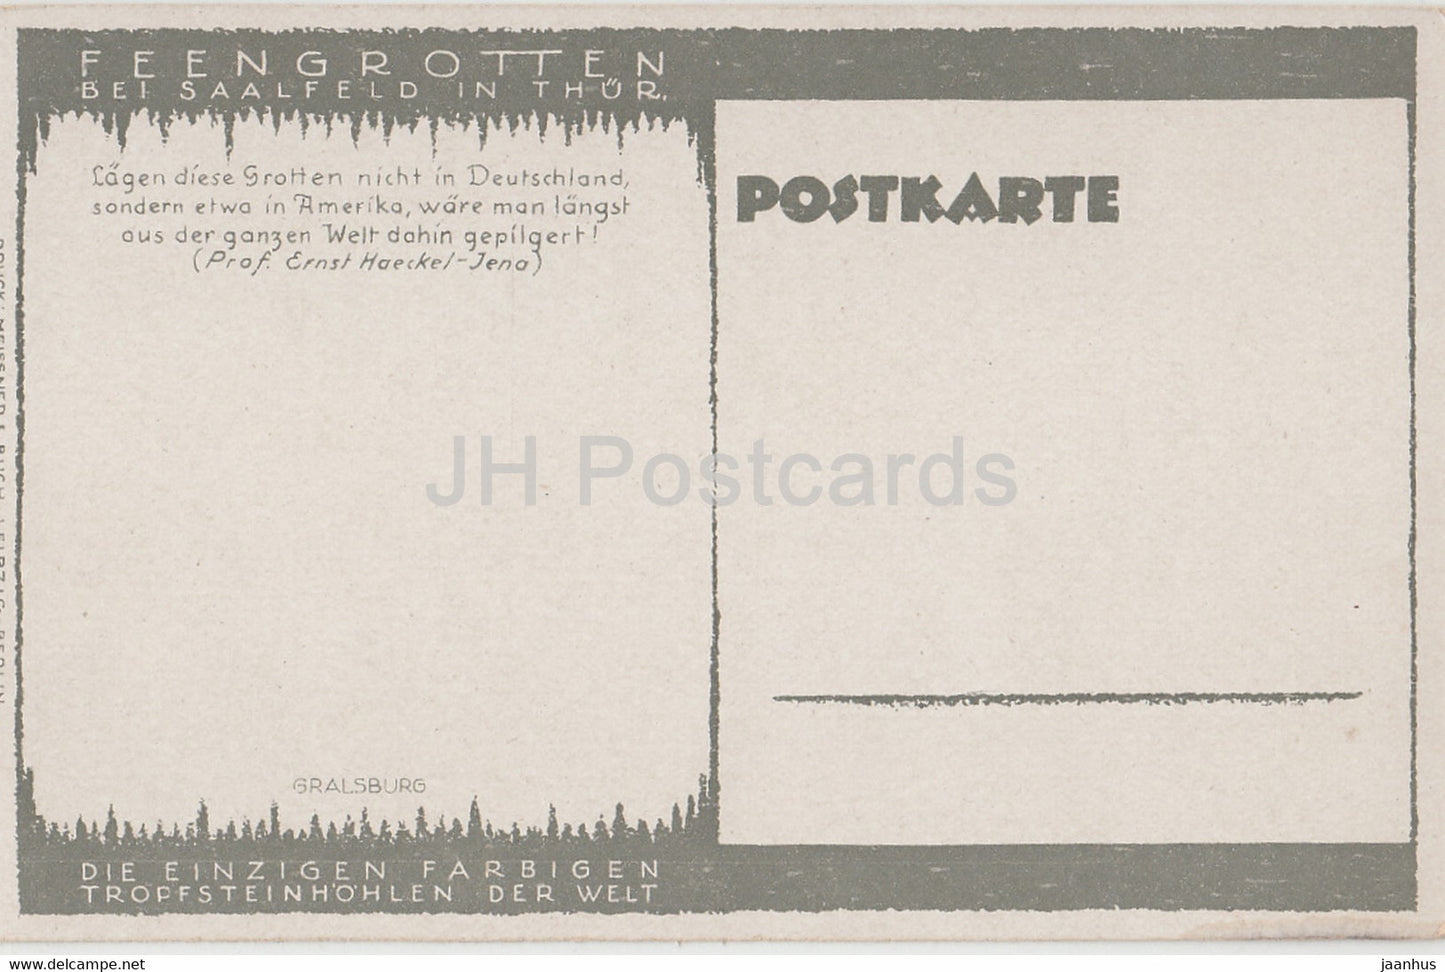 Feengrotten bei Saalfeld in Thur - Gralsburg - Höhle - alte Postkarte - Deutschland - unbenutzt